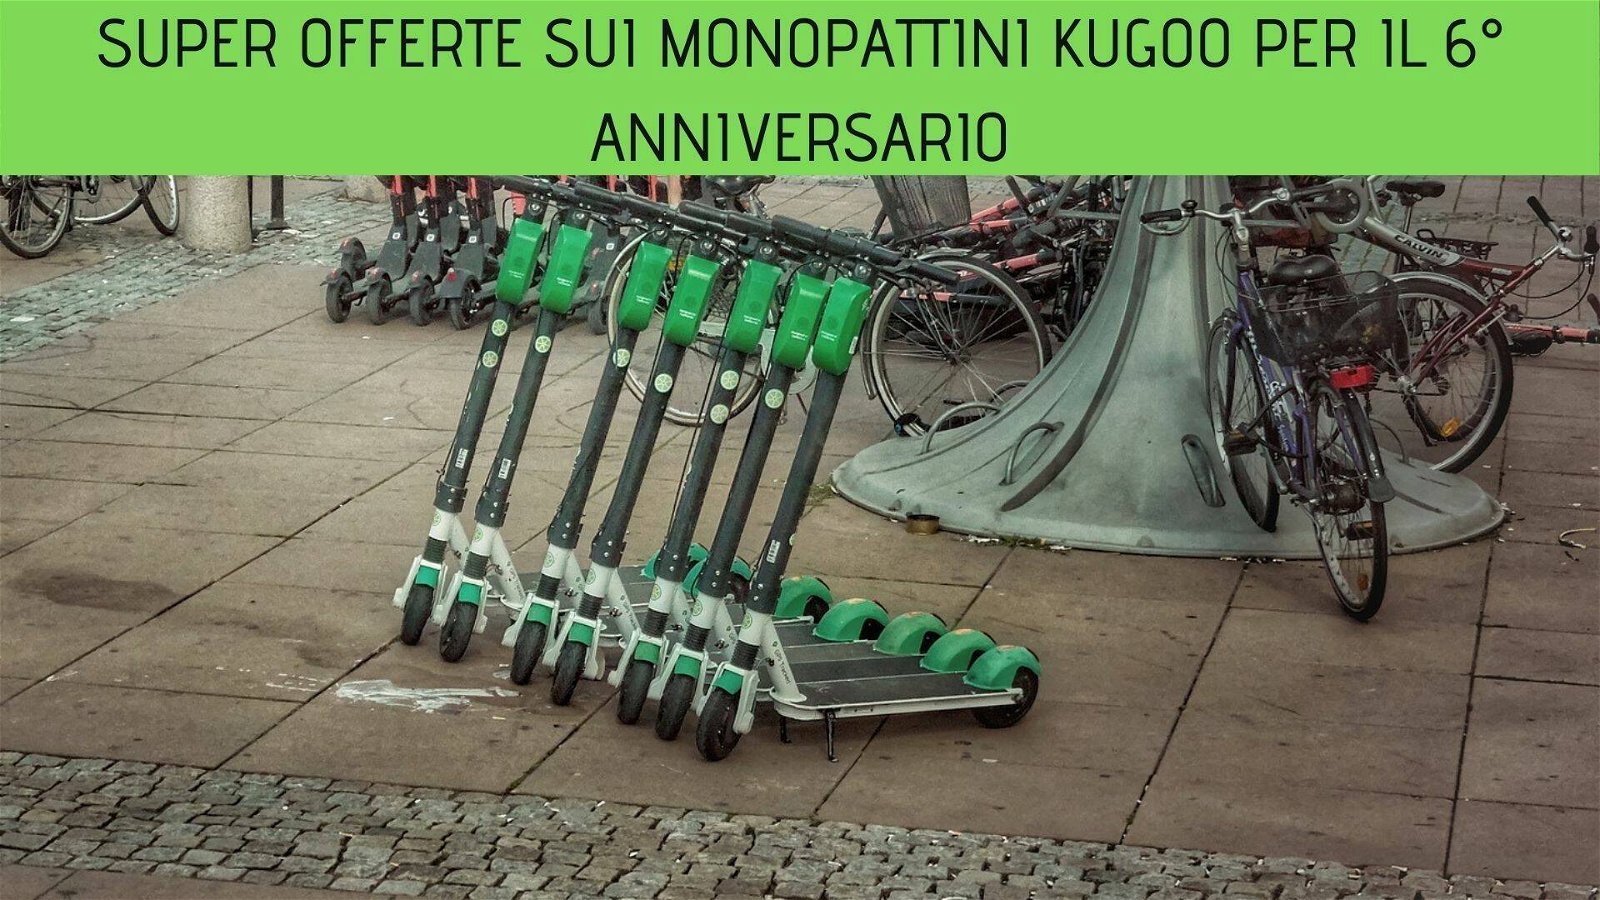 Immagine di Super offerte sui monopattini Kugoo per il 6° anniversario